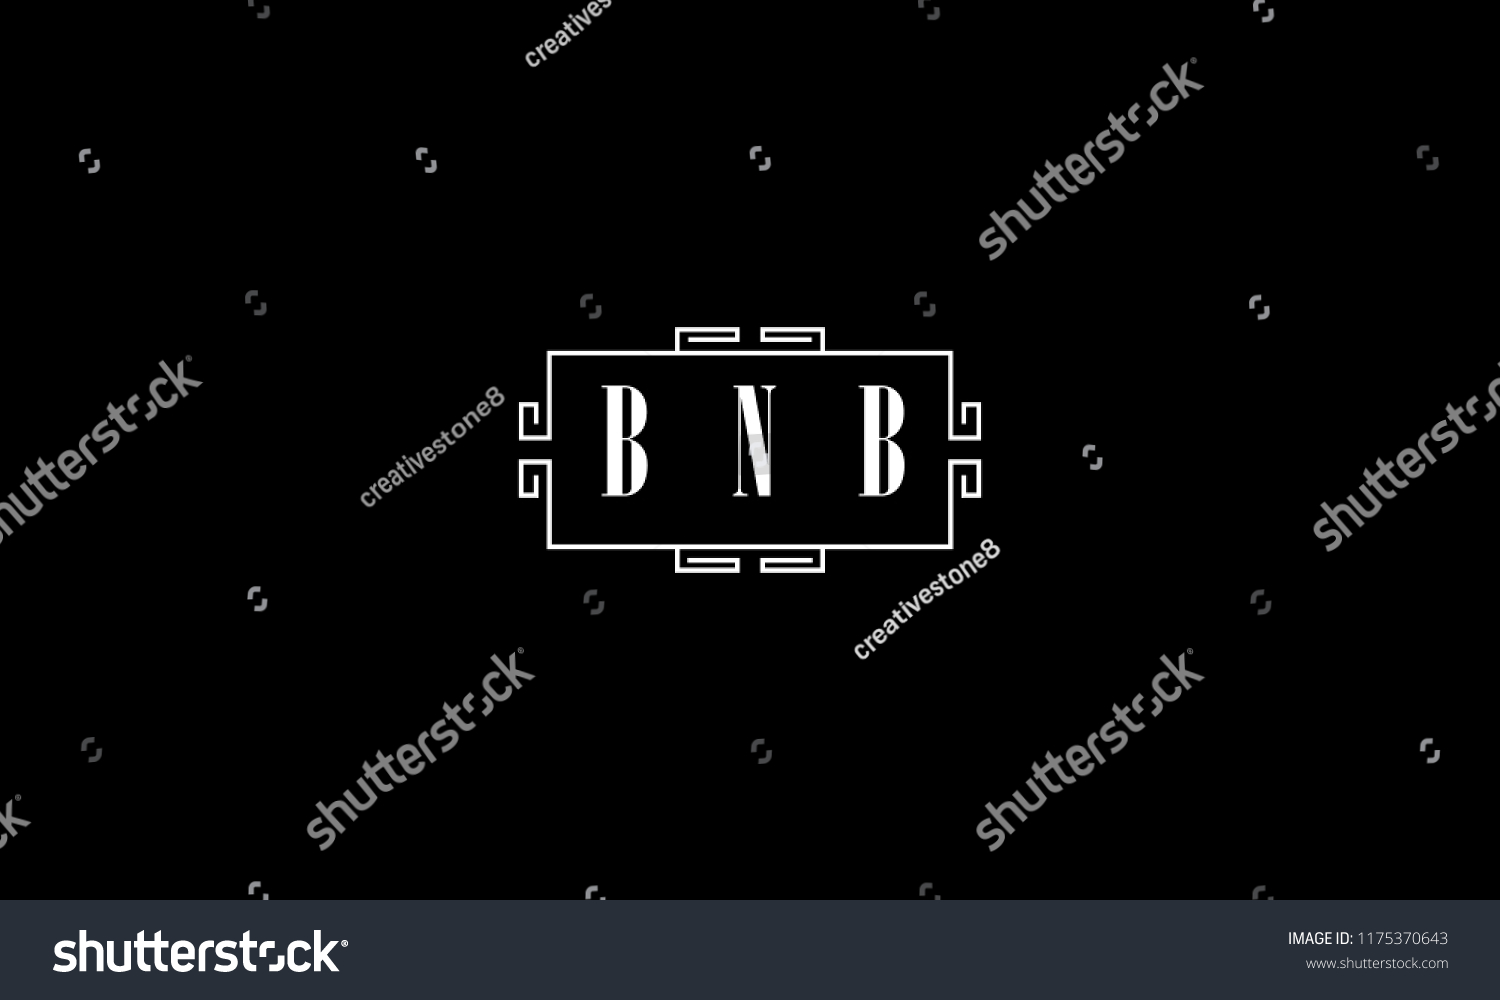 SVG of LETTER B N B VINTAGE STYLE LOGO DESIGN FOR ILLUSTRATION USE svg